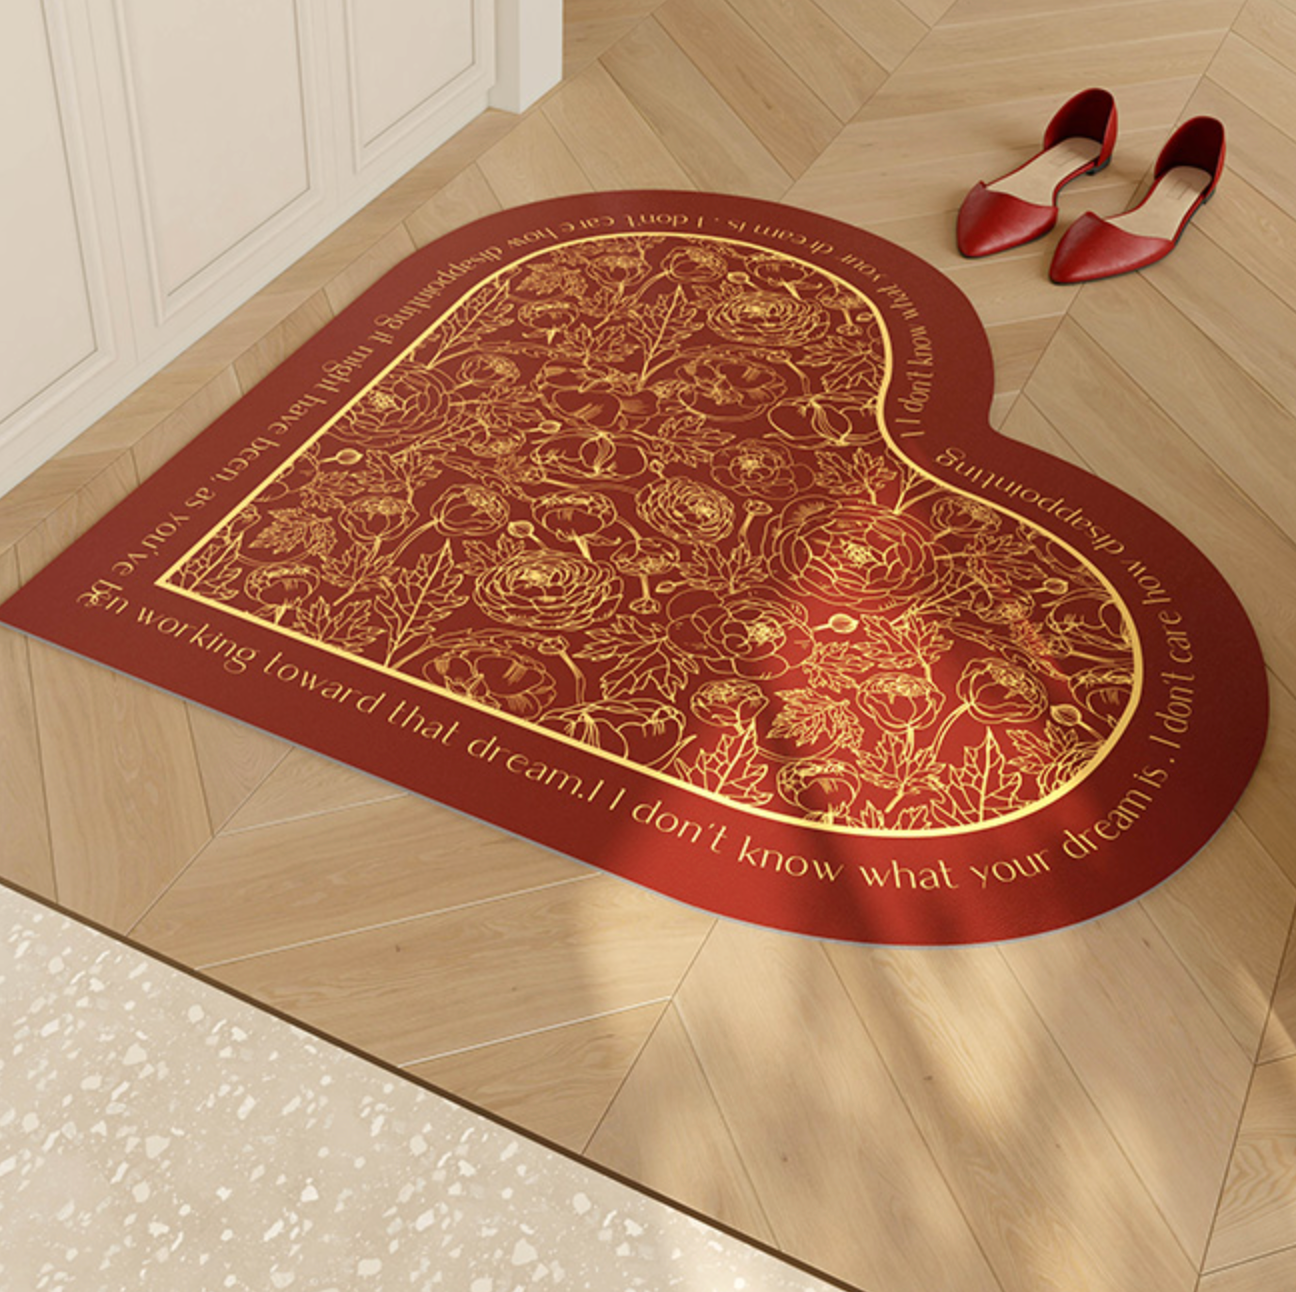 3design heart red mat